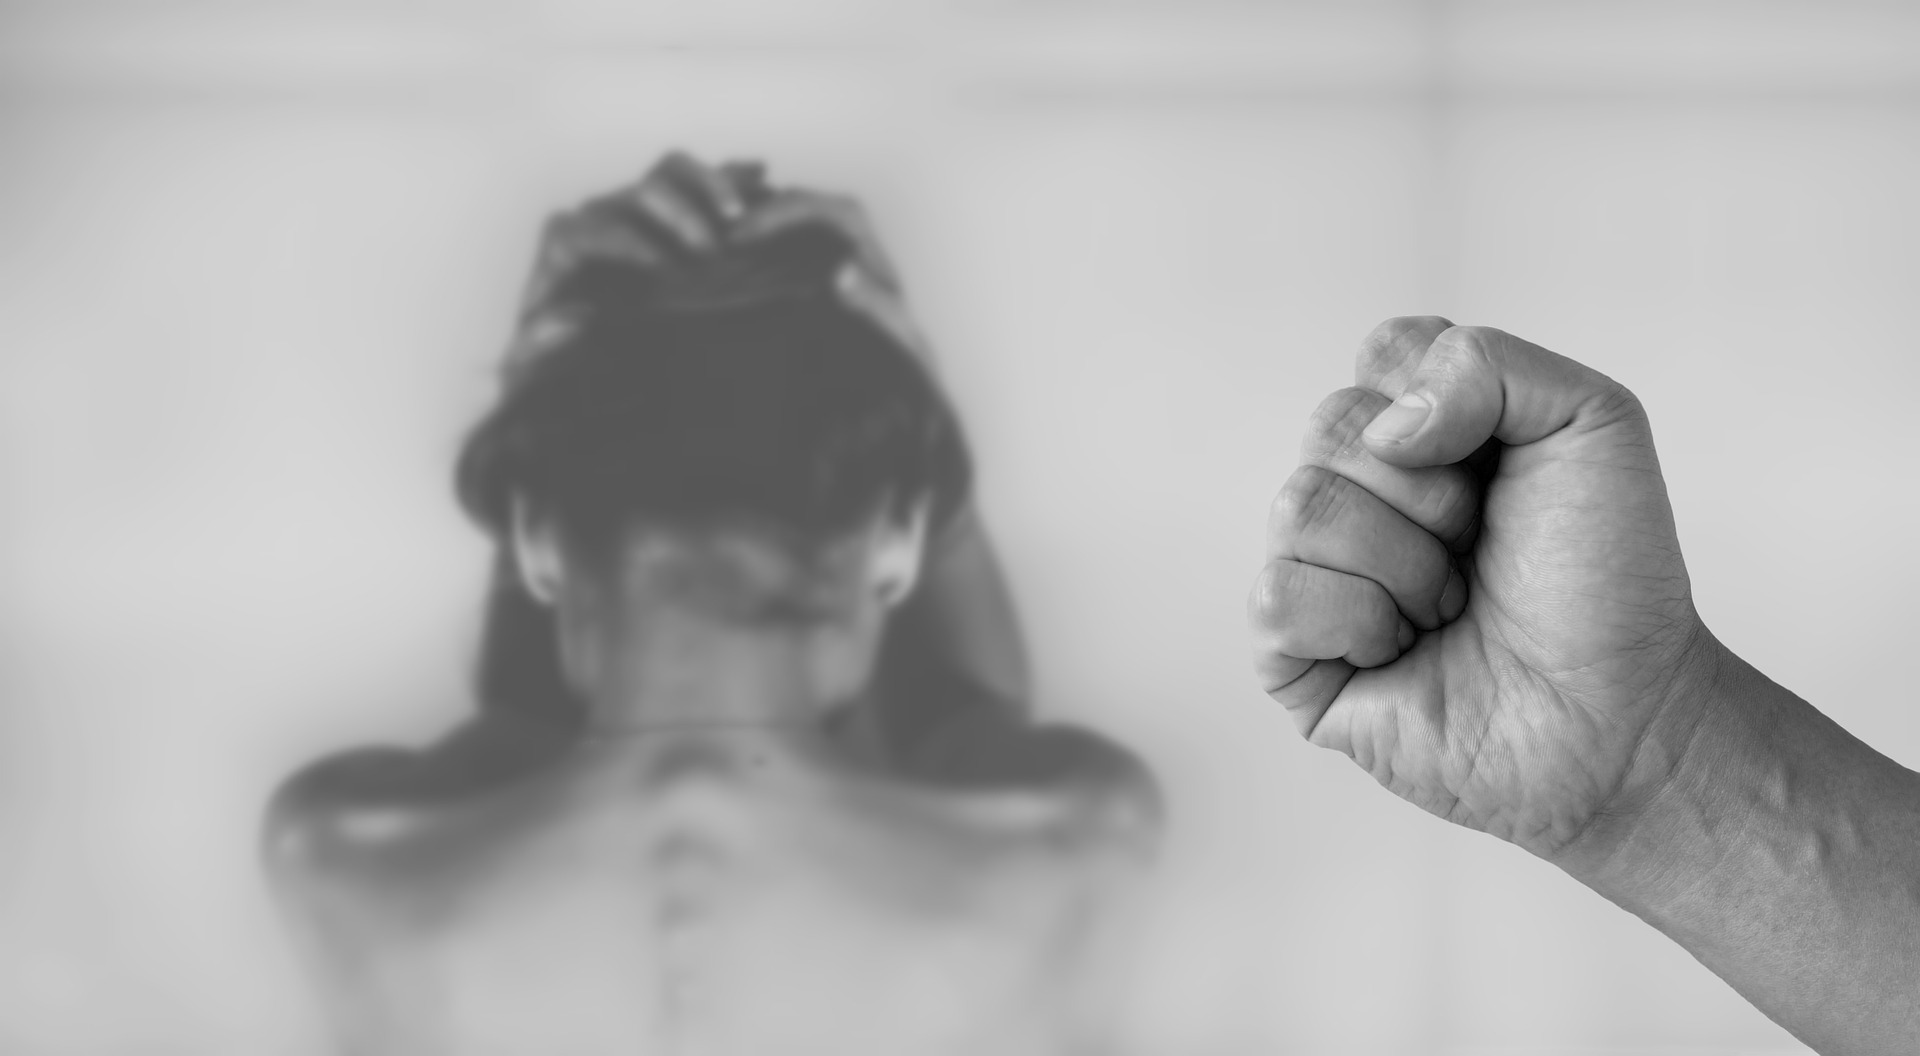 Aumentaron los casos de violencia contra las mujeres en Colombia, se han presentado 98.545 víctimas en Medicina Legal - (Foto: Pixabay)